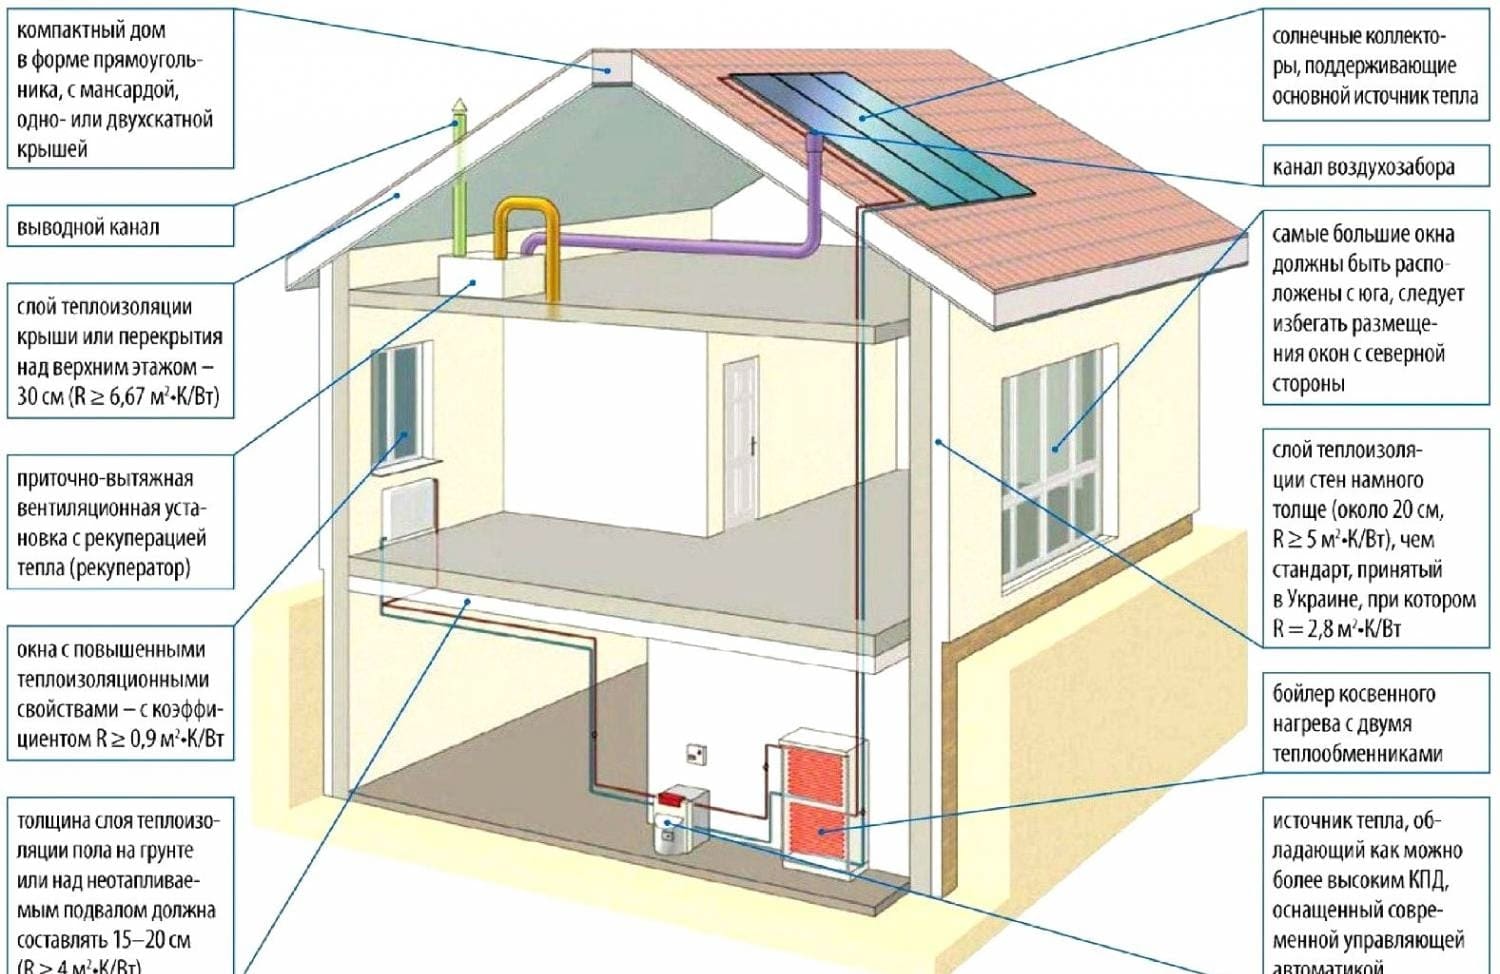 építészeti megoldások egy energiatakarékos házhoz 3